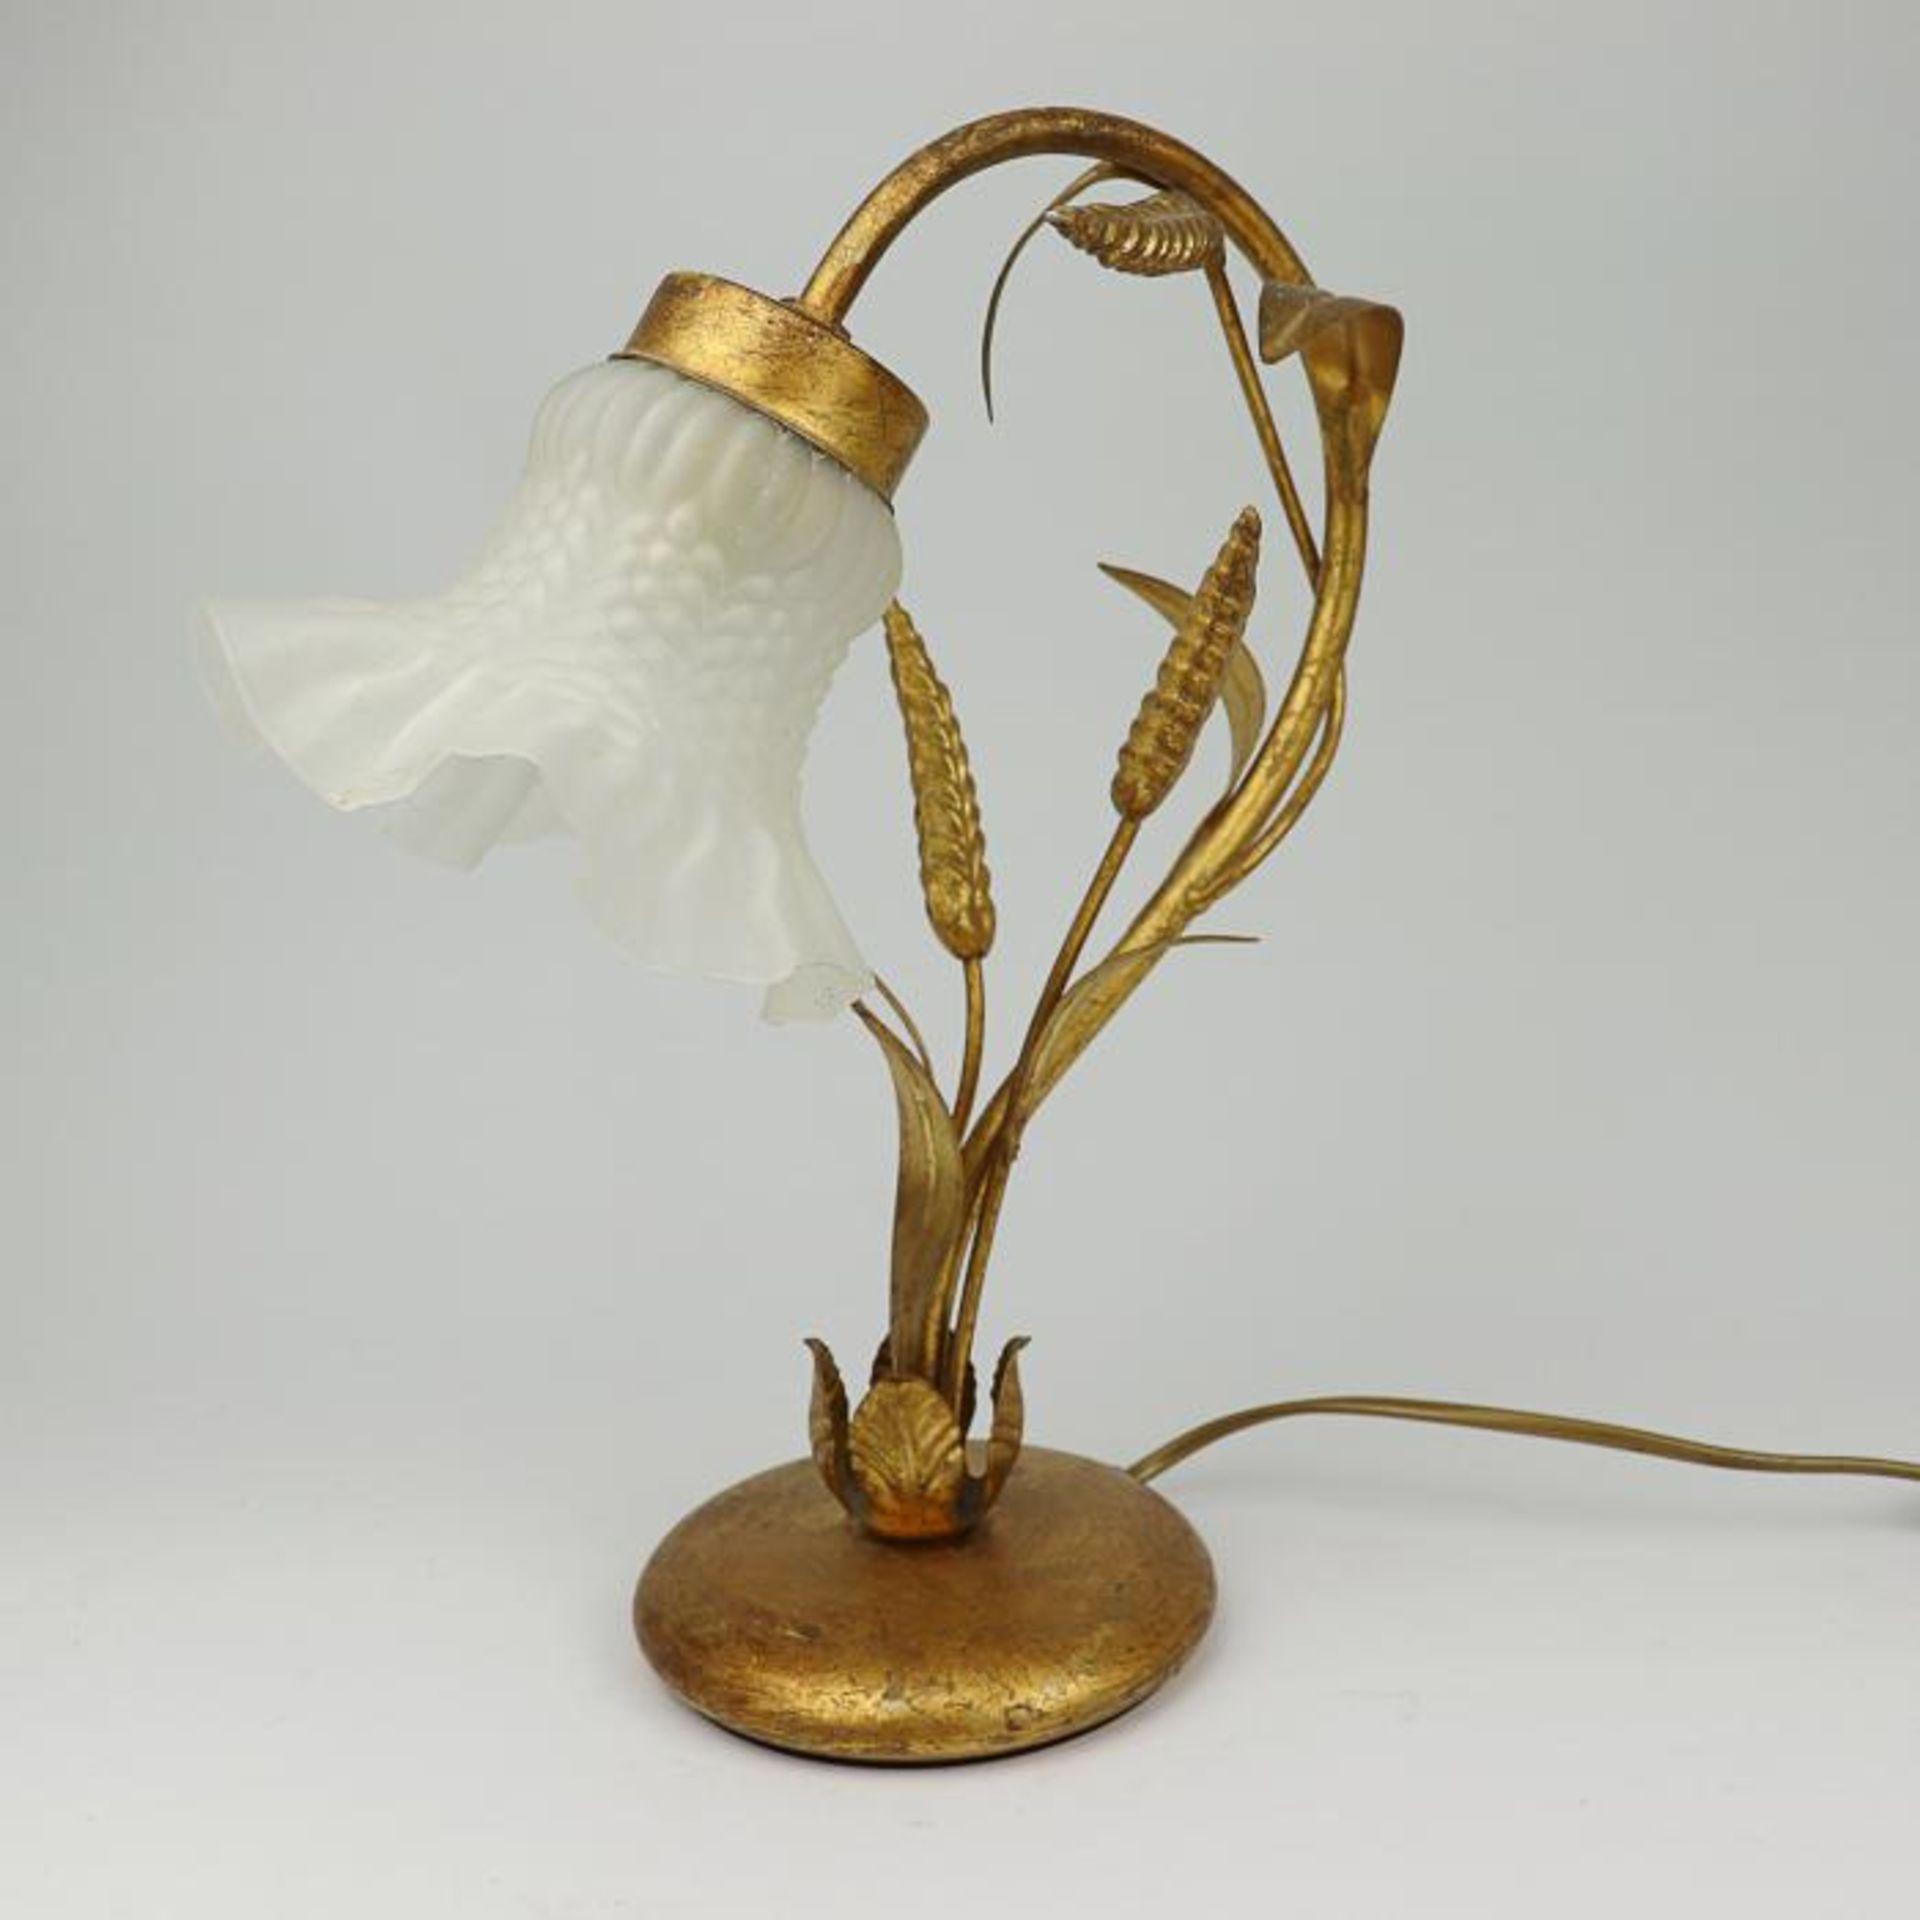 Tischlampe1950er J., goldfarbenes Metall/Glas, Rundfuß, geschwungener Arm m. vollplastischen